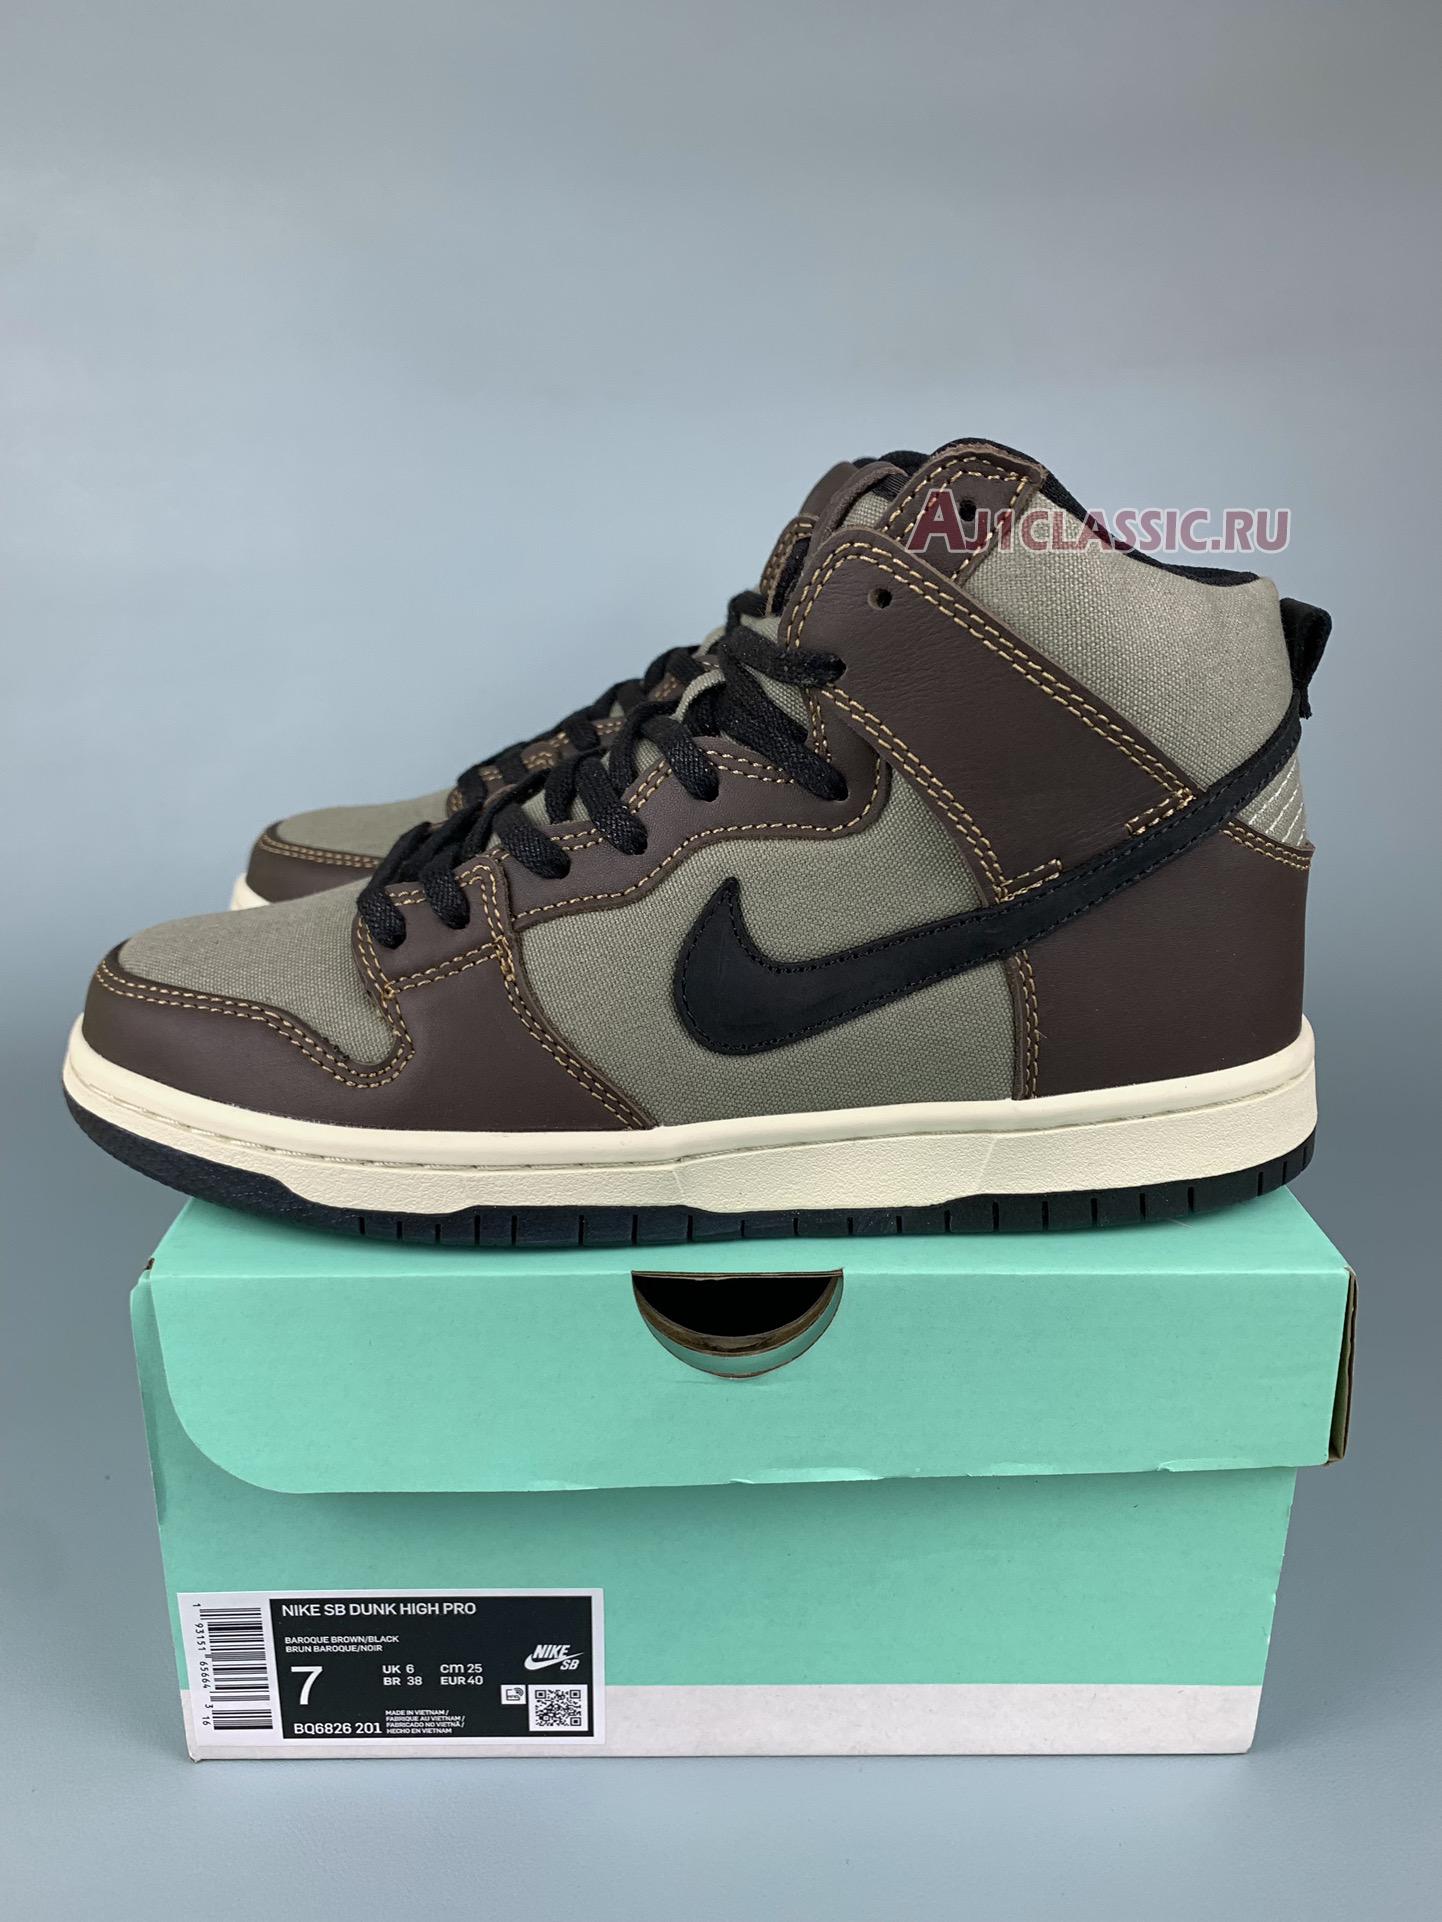 Nike Dunk SB High Pro "Baroque Brown" BQ6826-201